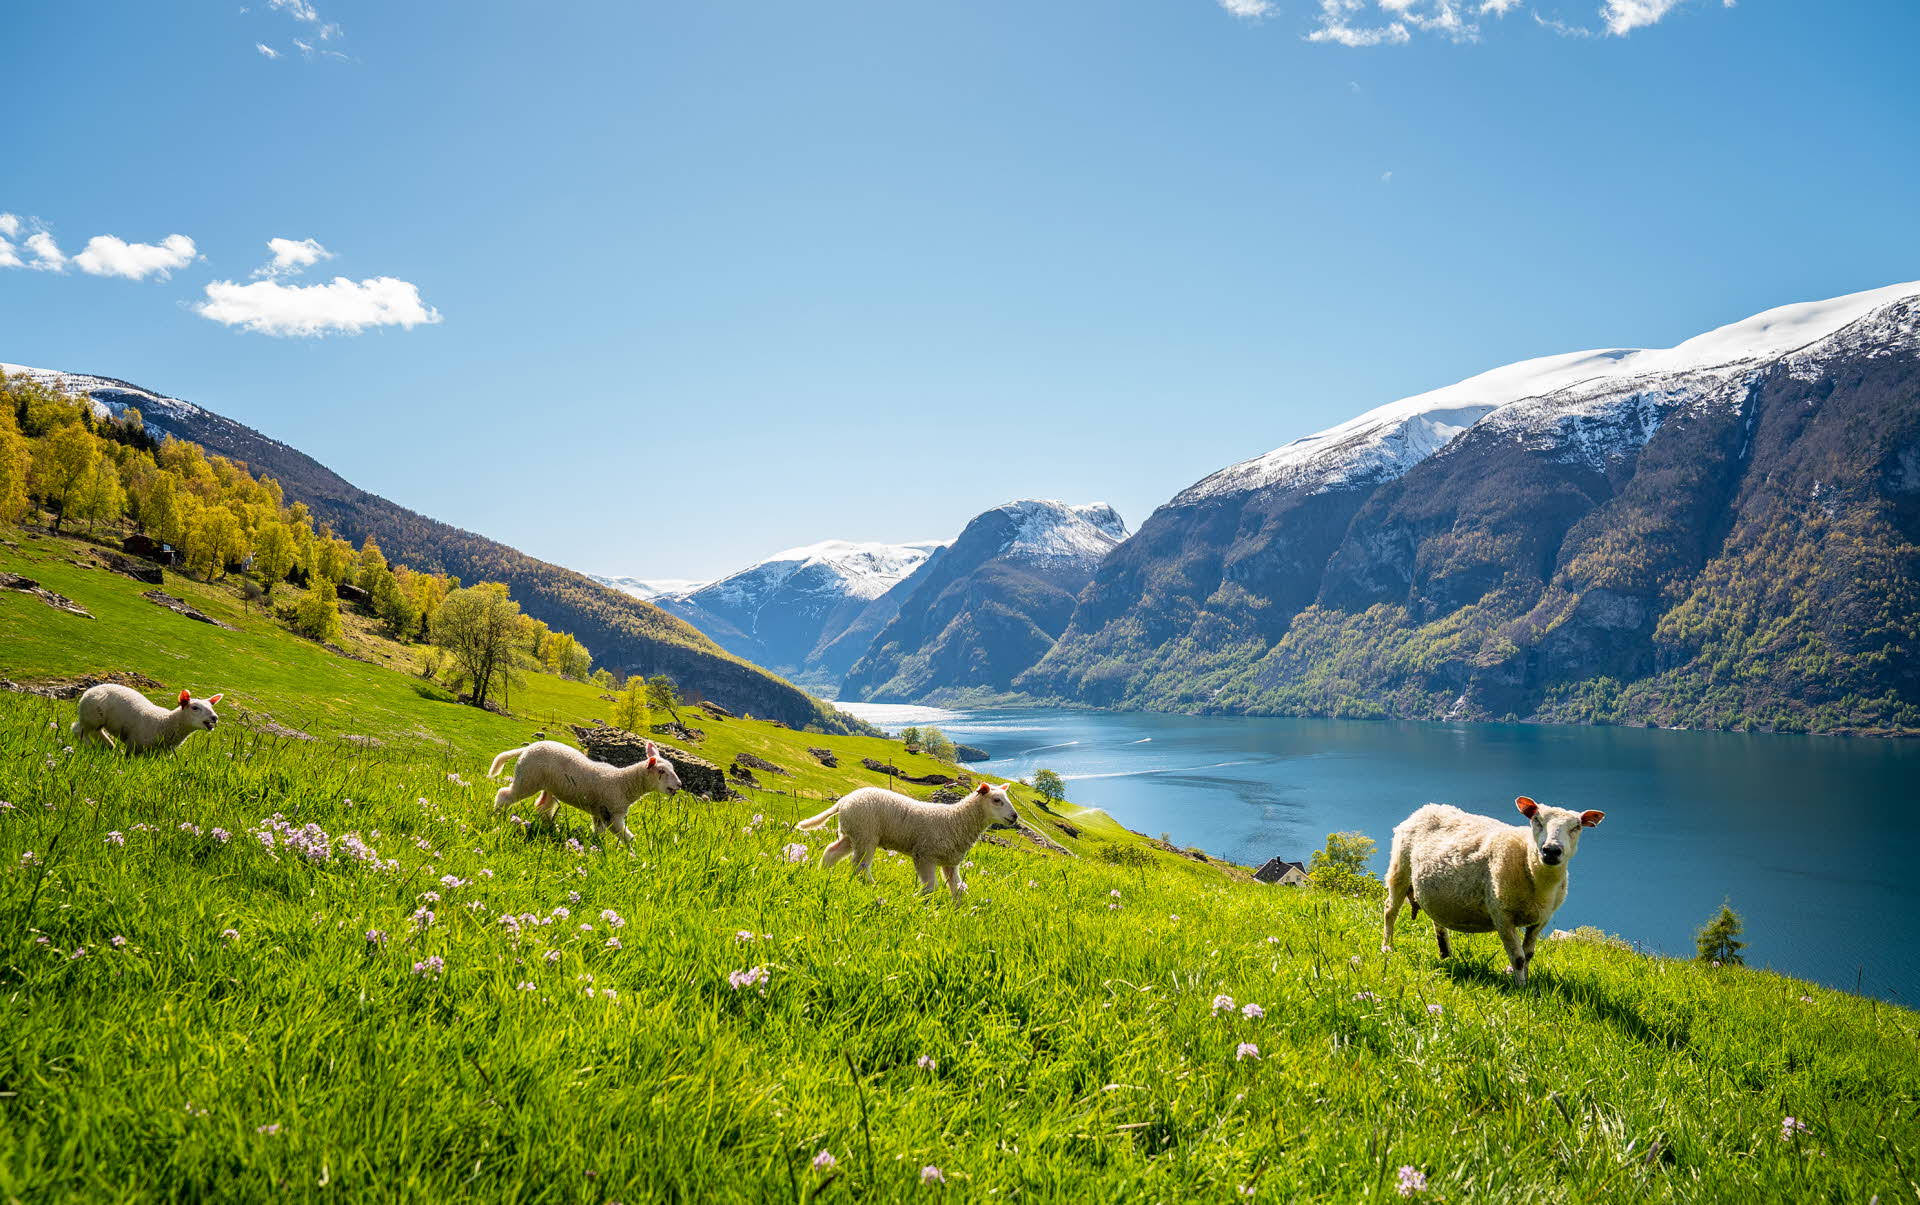 世界遺産に登録されているアルランフィヨルドと雪を頂いた山々を眺めながら、花咲く牧草地で羊が草を食んでいます